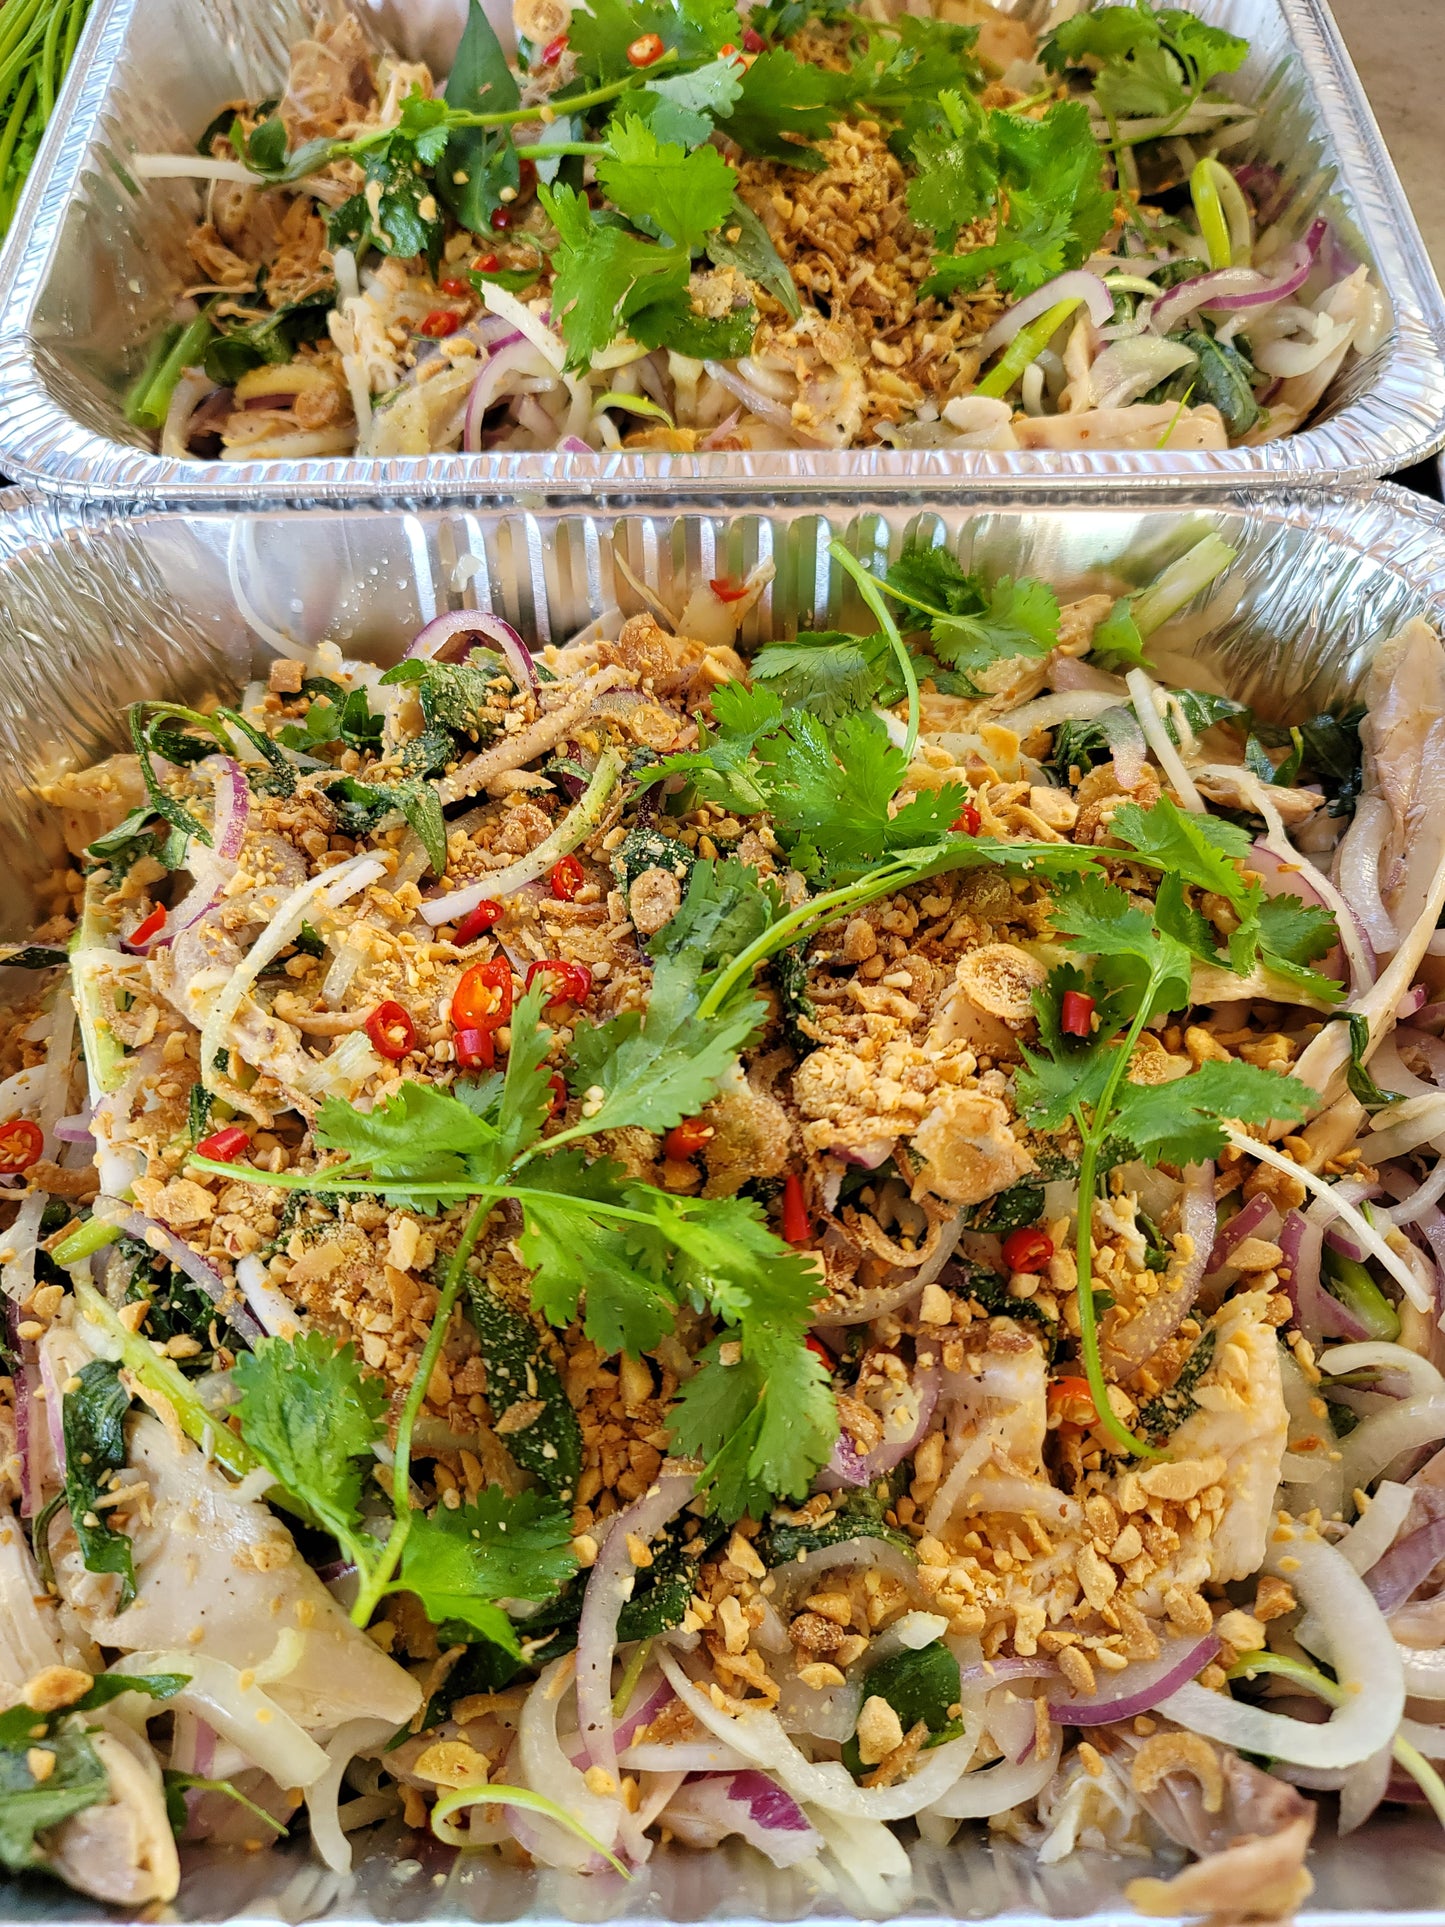 Gà Xe Phai or Gà Len Mam - Chicken Salads (5-6 servings)